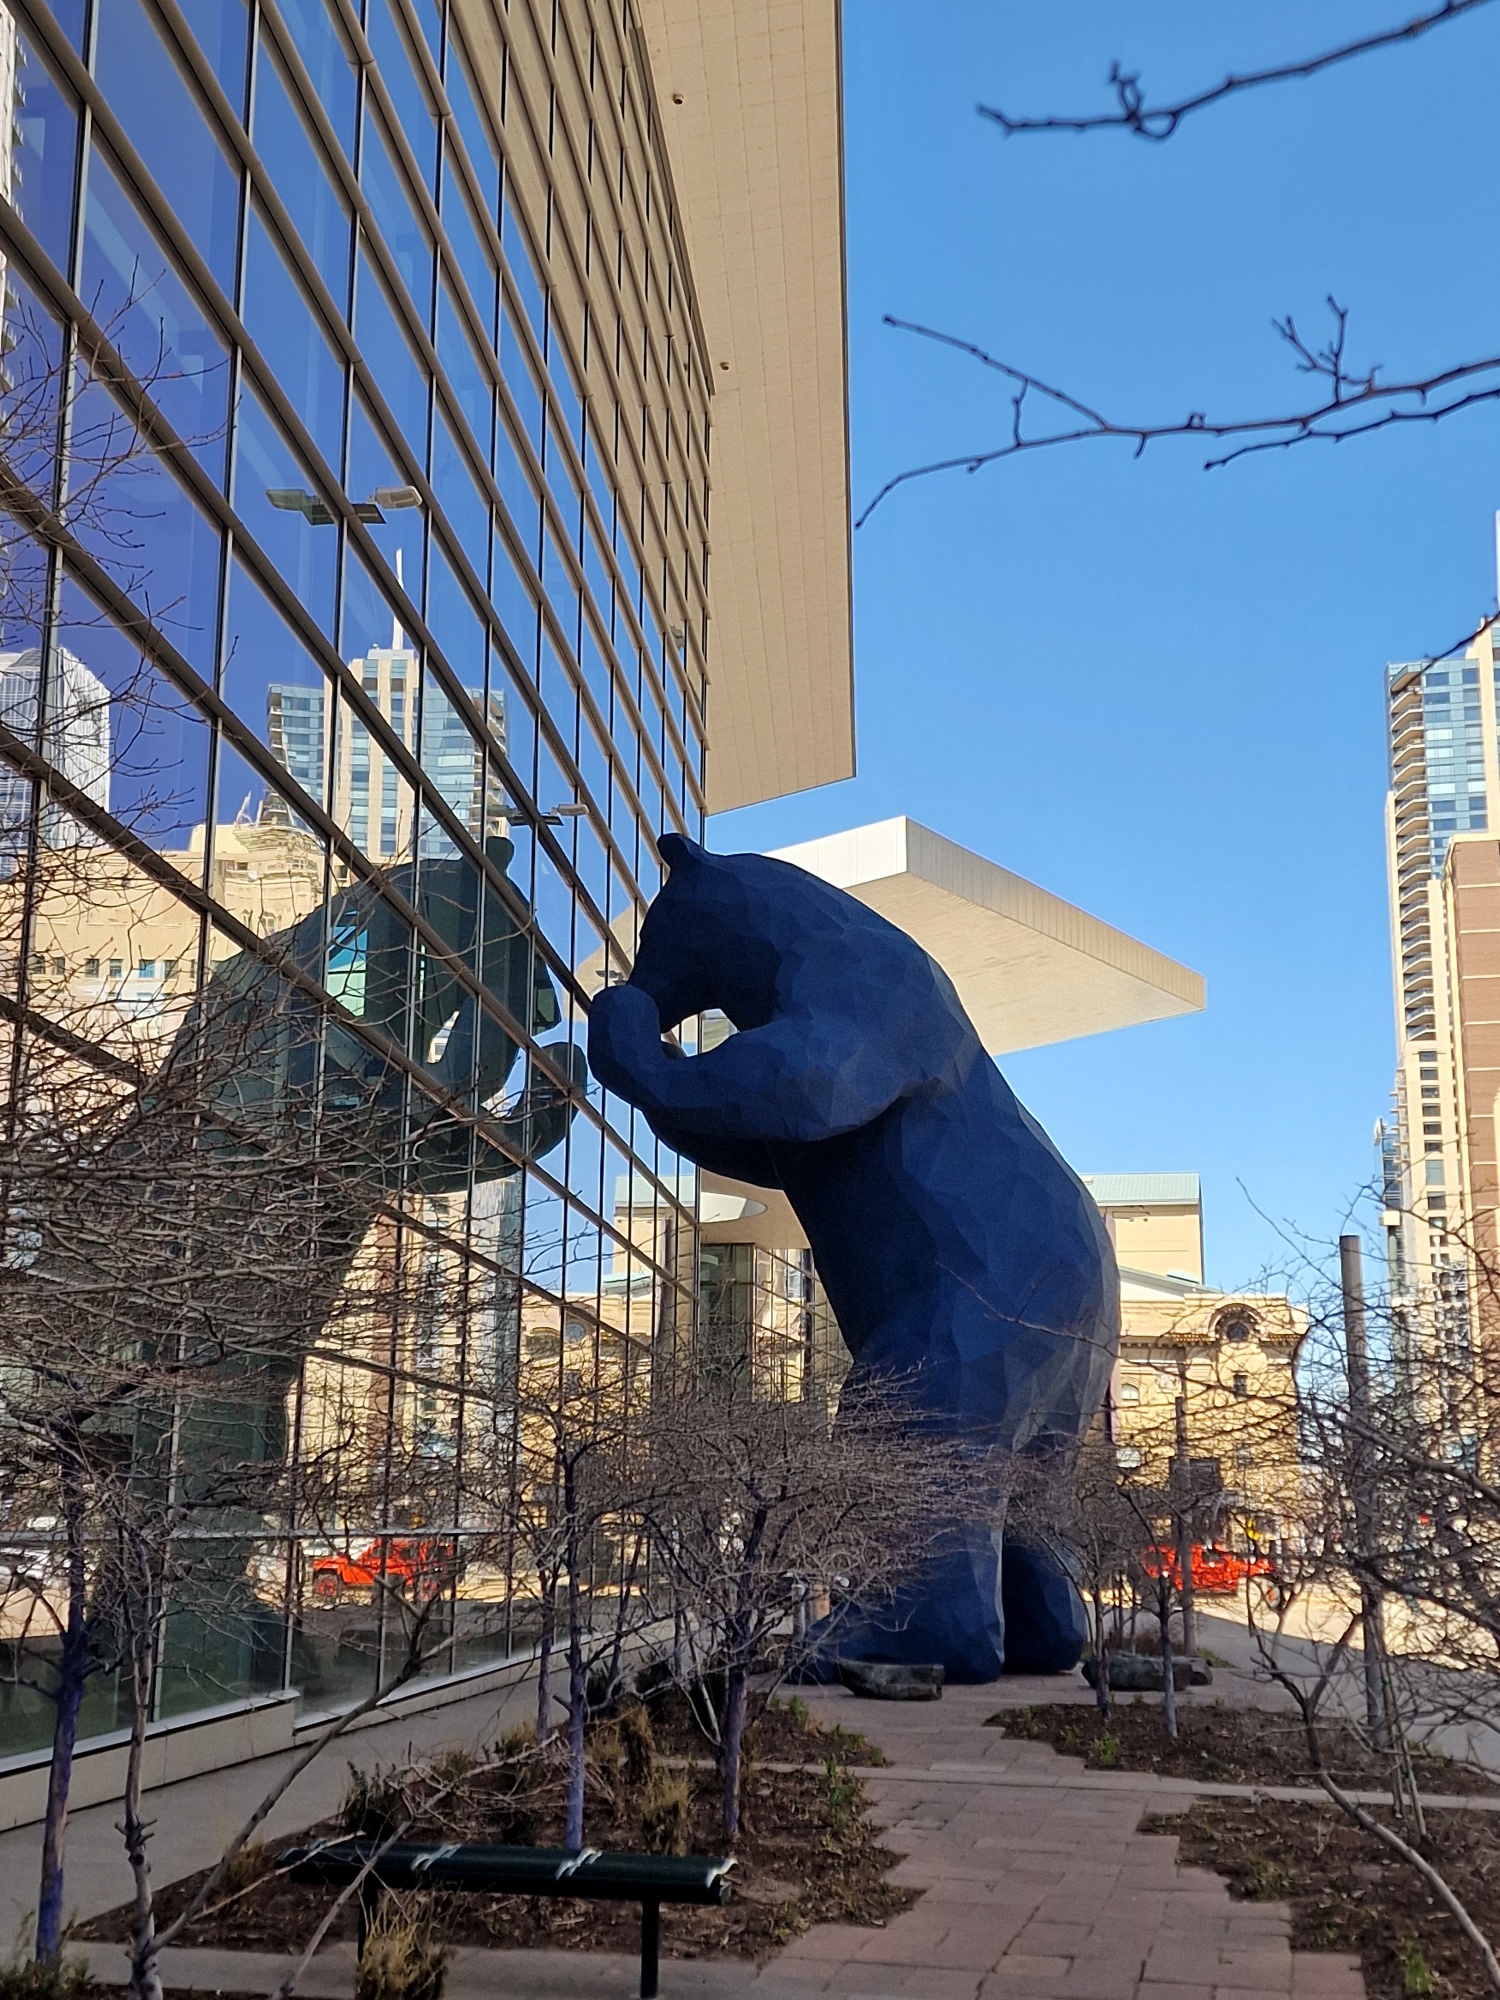 Big blue bear in Denver